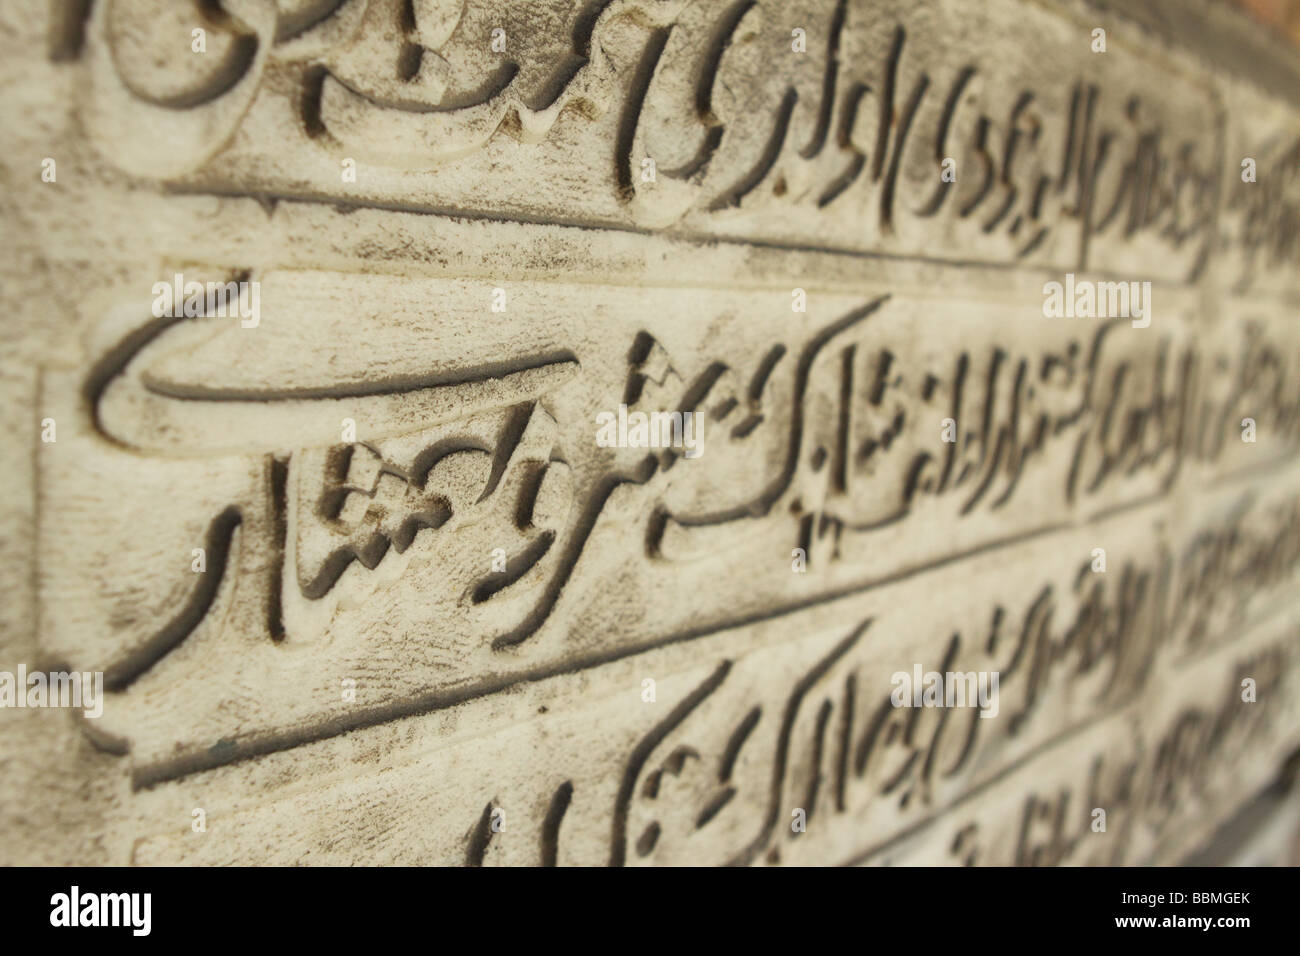 Istanbul TURQUIE Langue arabe script sur stone au Palais de Topkapi Banque D'Images